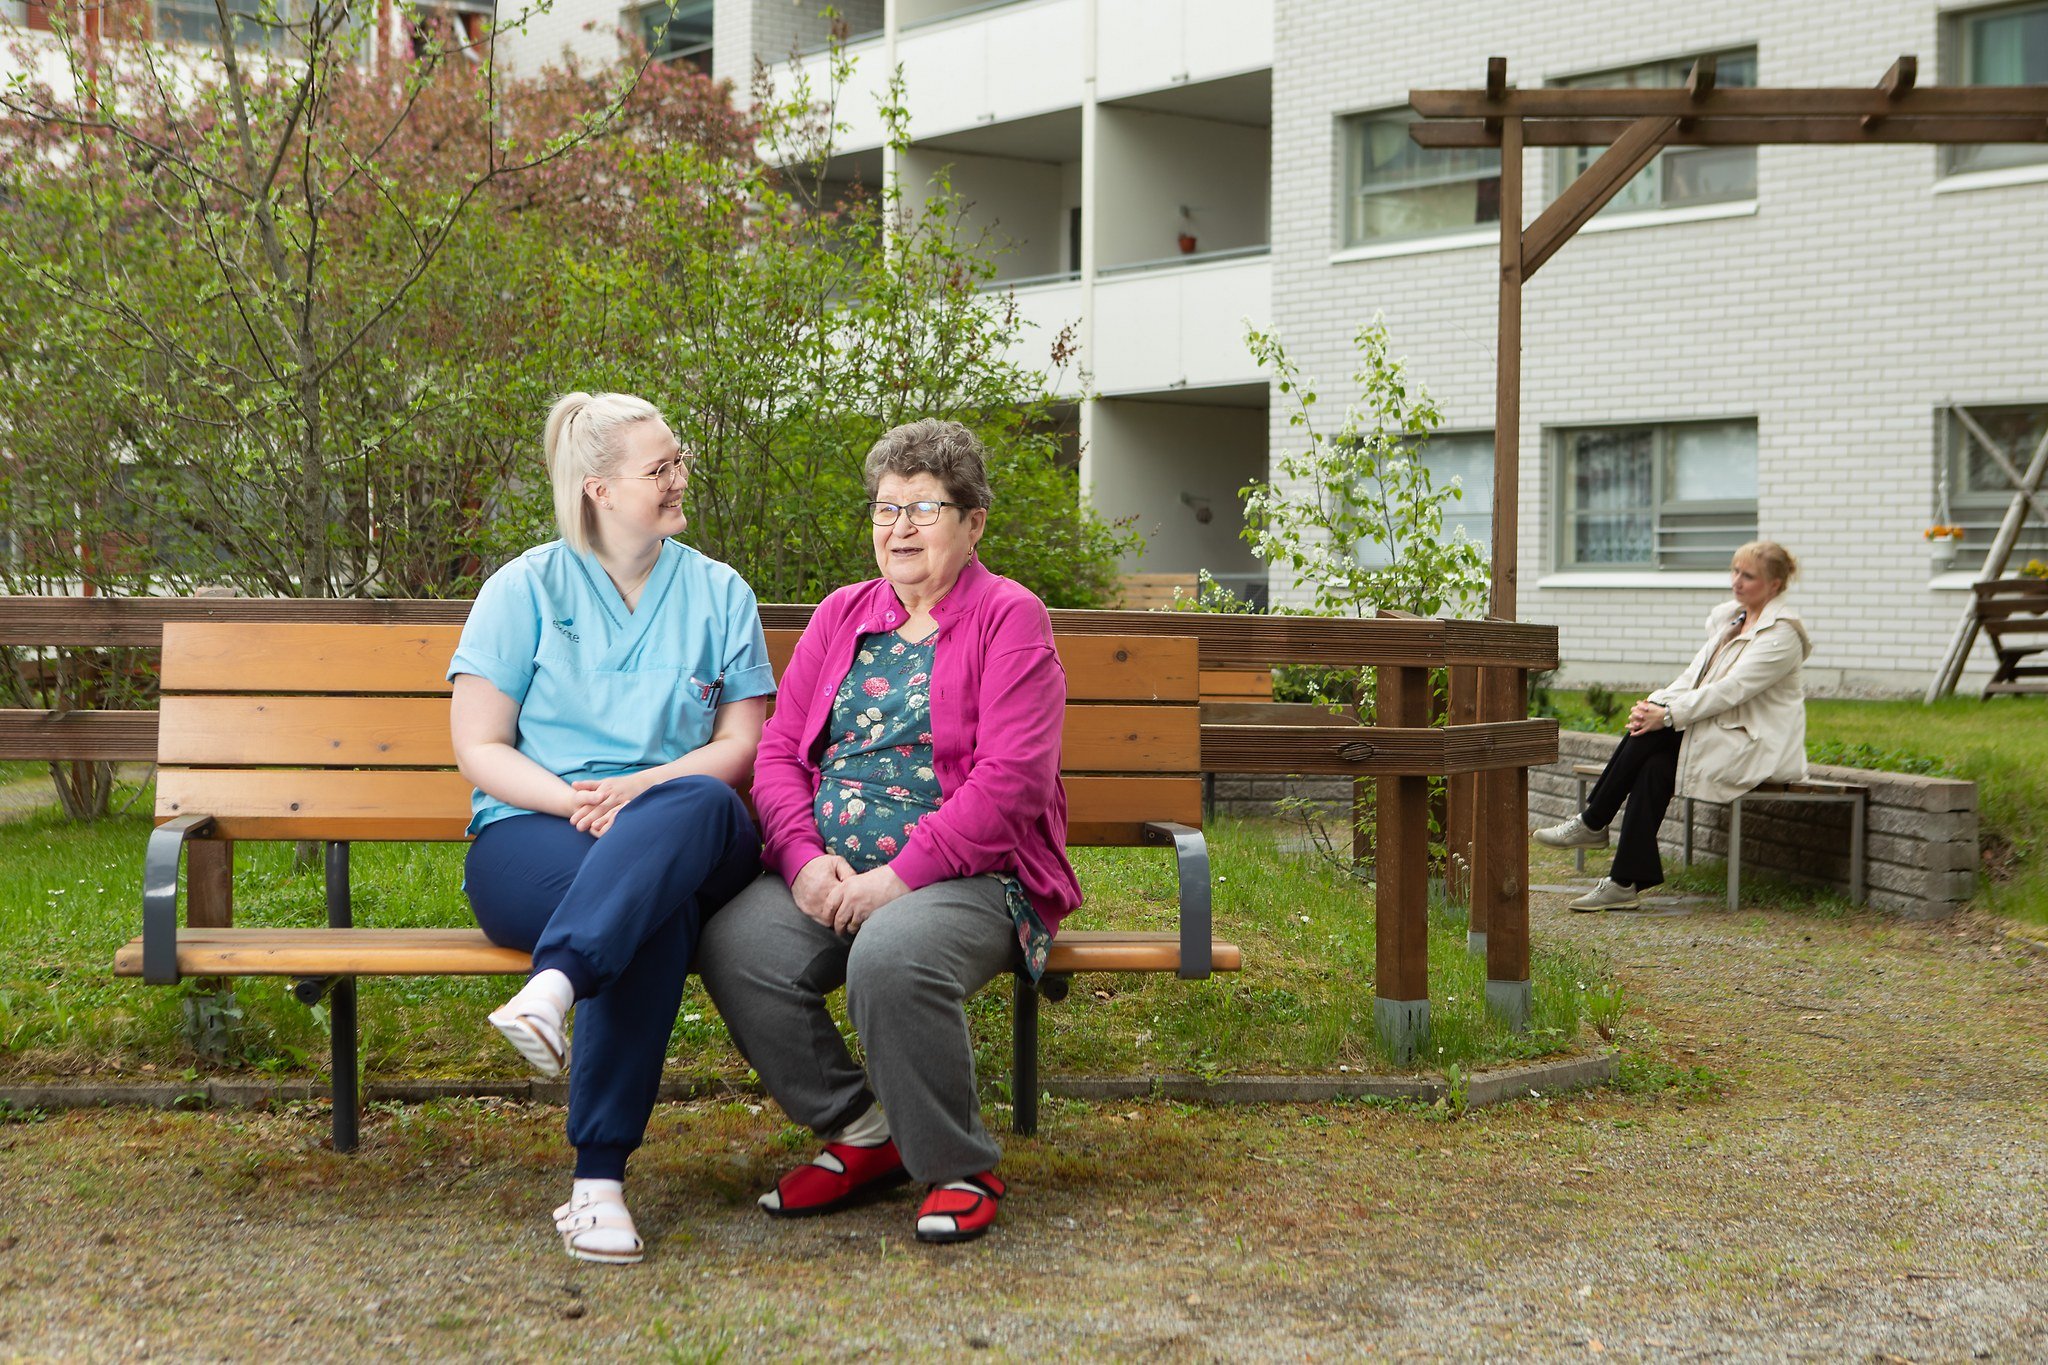 Työntekijä ja iäkäs nainen istuvat puiston penkillä kääntyneenä toisiaan kohden ja näyttävät iloisilta sekä rauhallisilta